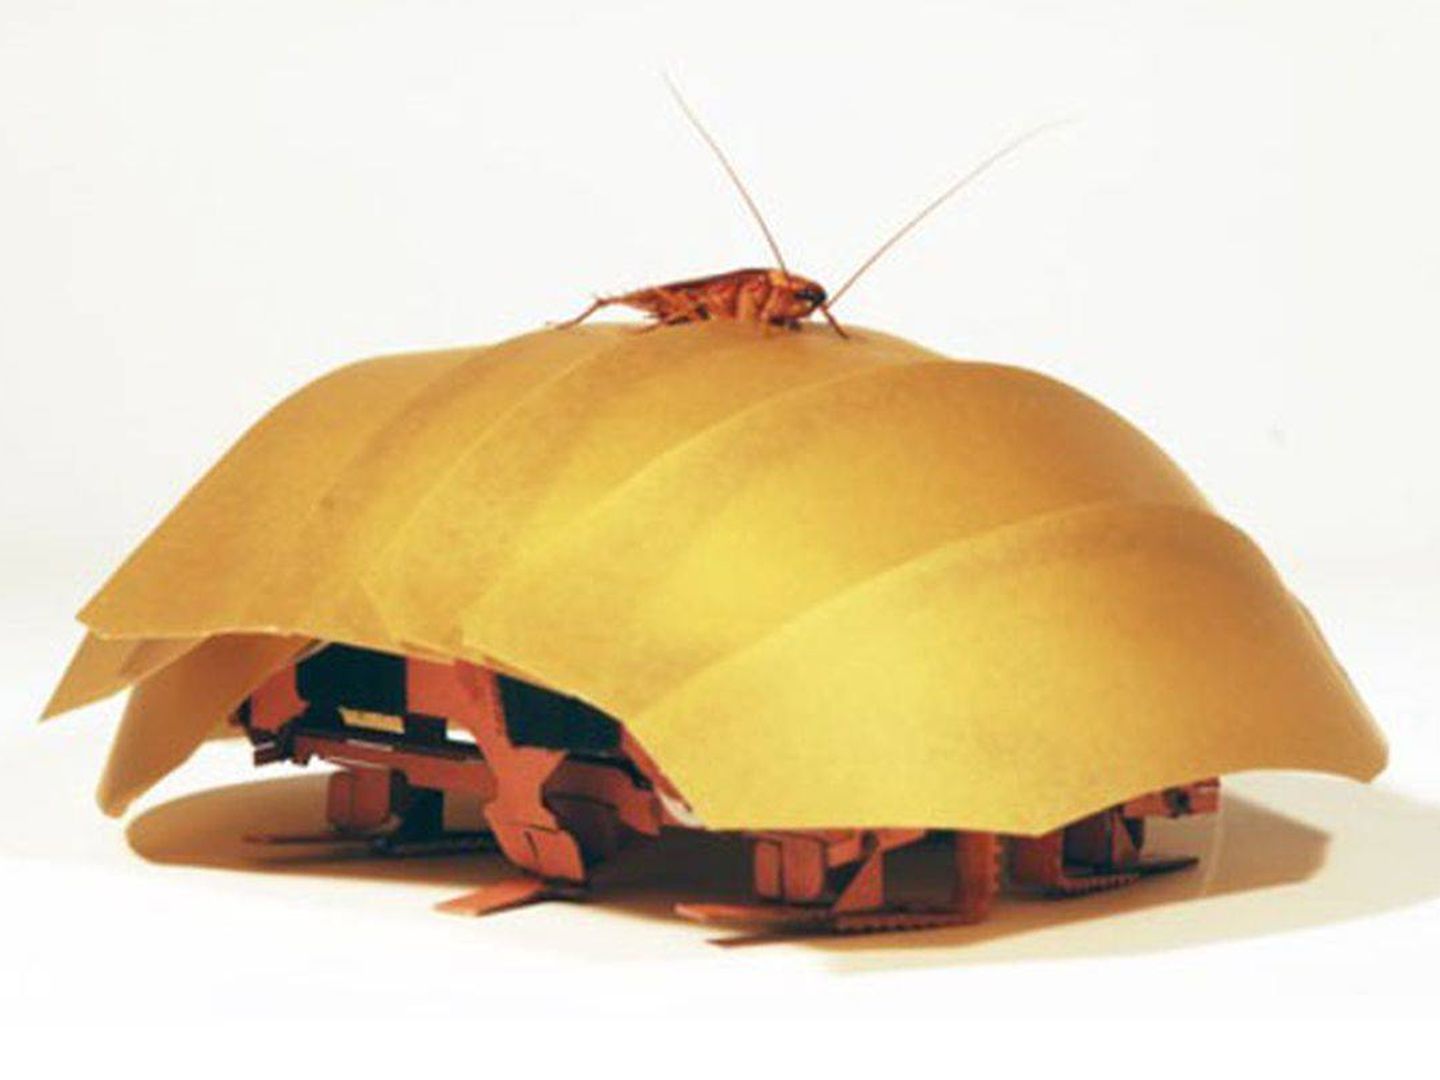 Cucaracha robótica CRAM diseñada por la Universidad de California Berkeley en 2016. (UC)